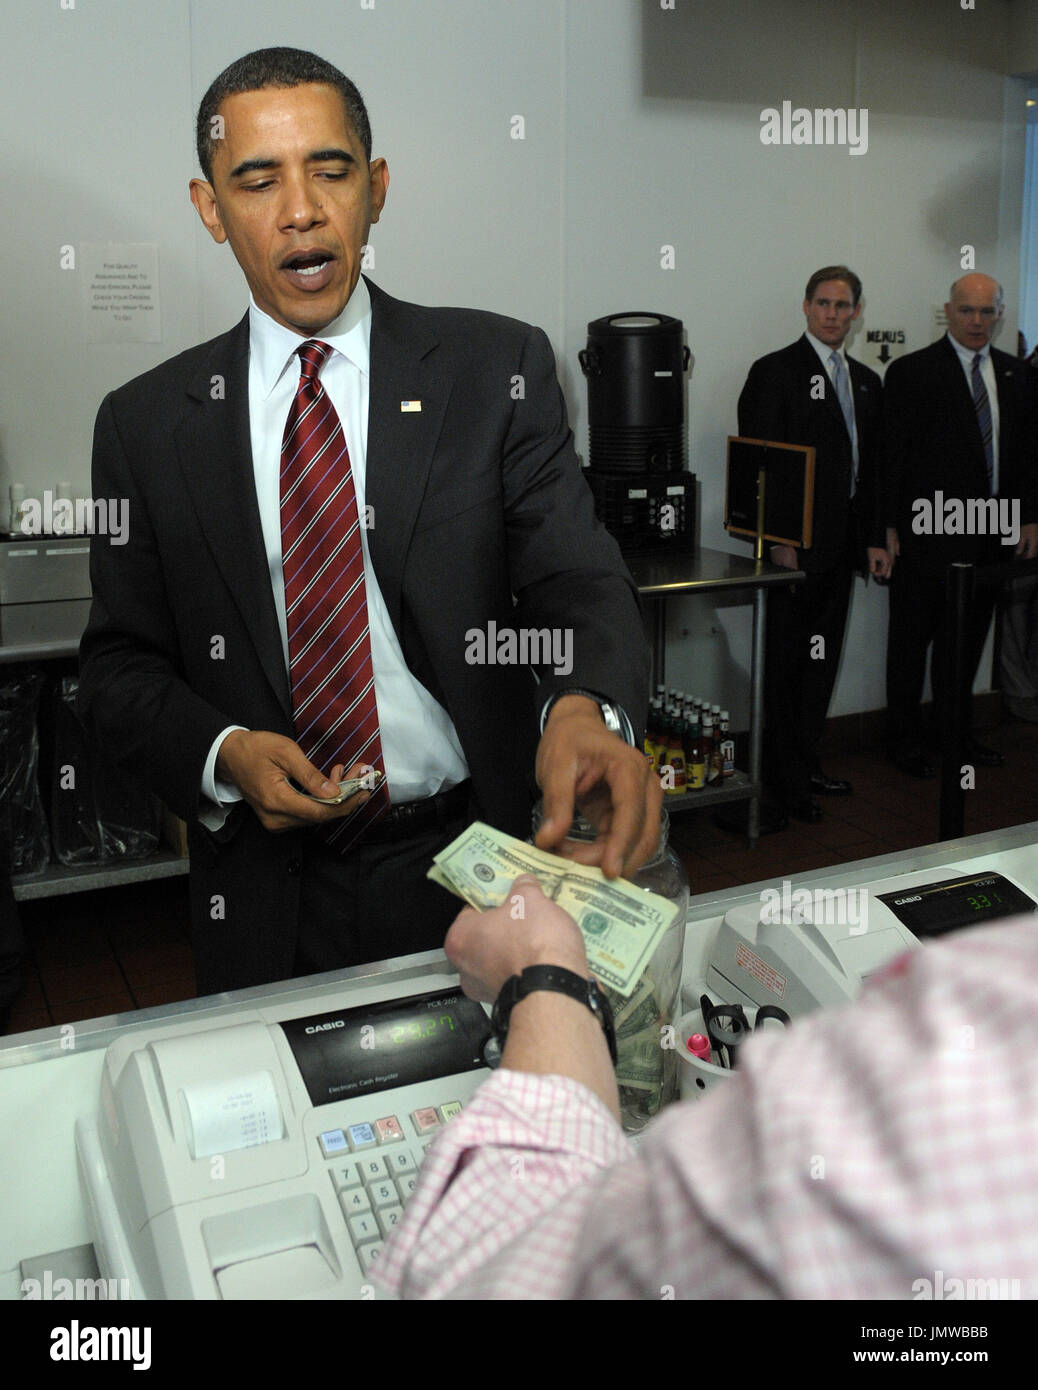 Arlington, VA - Mayo 5, 2009 -- El presidente de Estados Unidos, Barack Obama se paga después de ordenar el almuerzo en Ray's Hell Burger en Arlington, Virginia, el 5 de mayo de 2009. .Crédito: Roger L. Wollenberg - Piscina a través del CNP Foto de stock